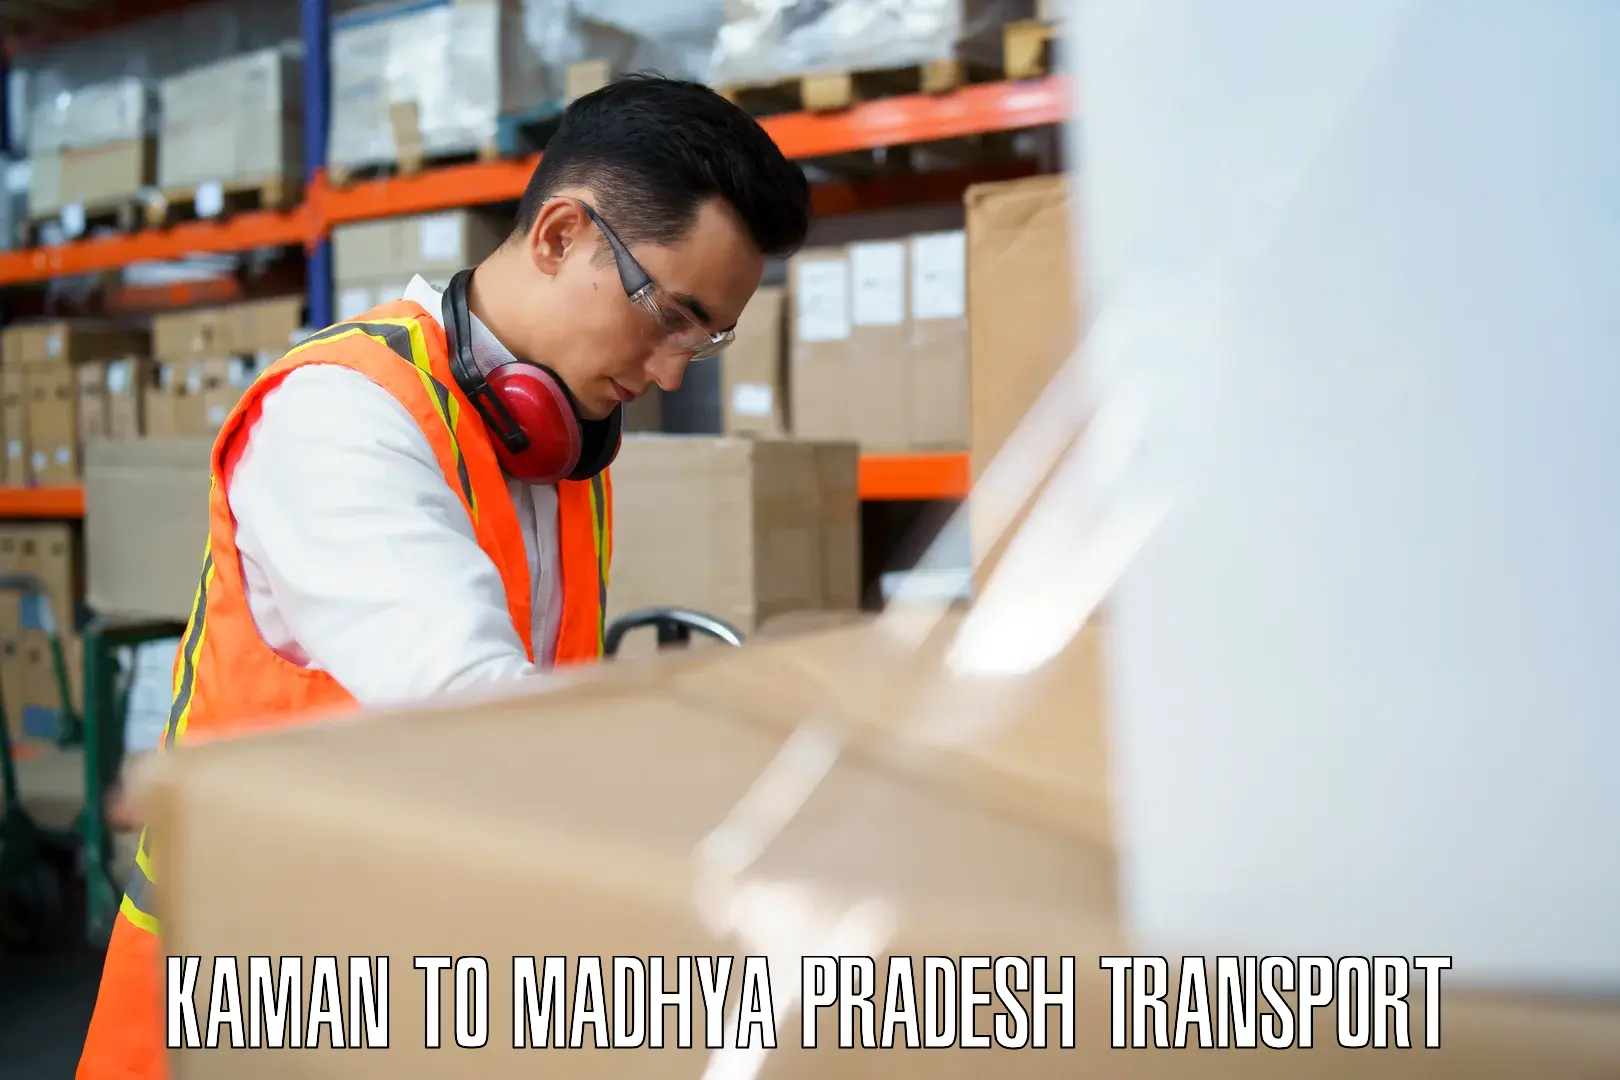 Truck transport companies in India Kaman to Madhya Pradesh